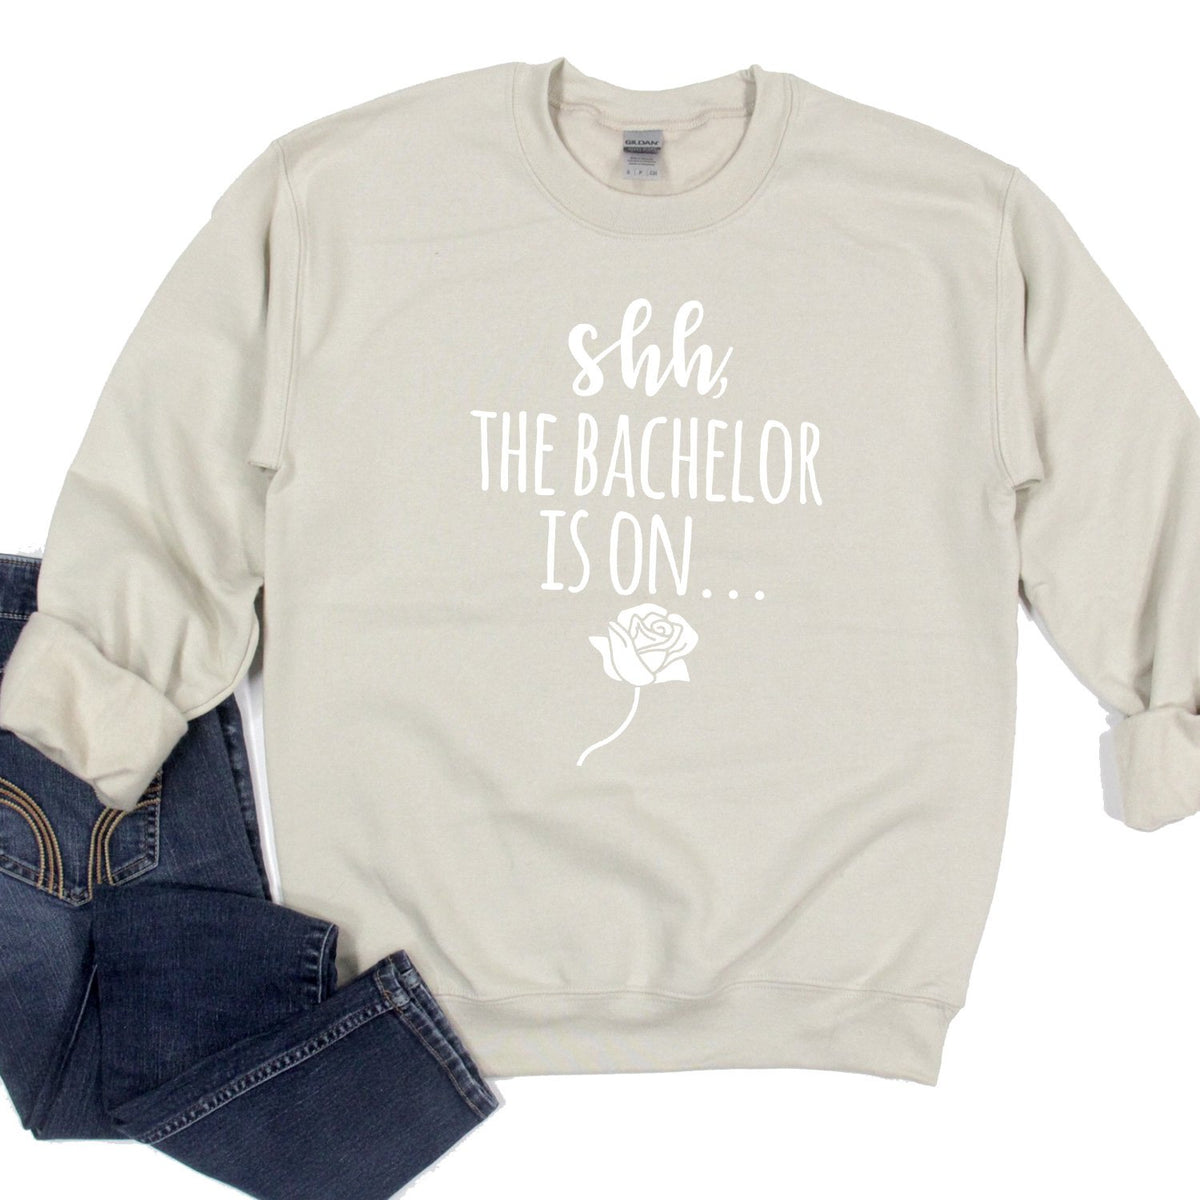 Shh The Bachelor is On - Long Sleeve Heavy Crewneck Sweatshirt